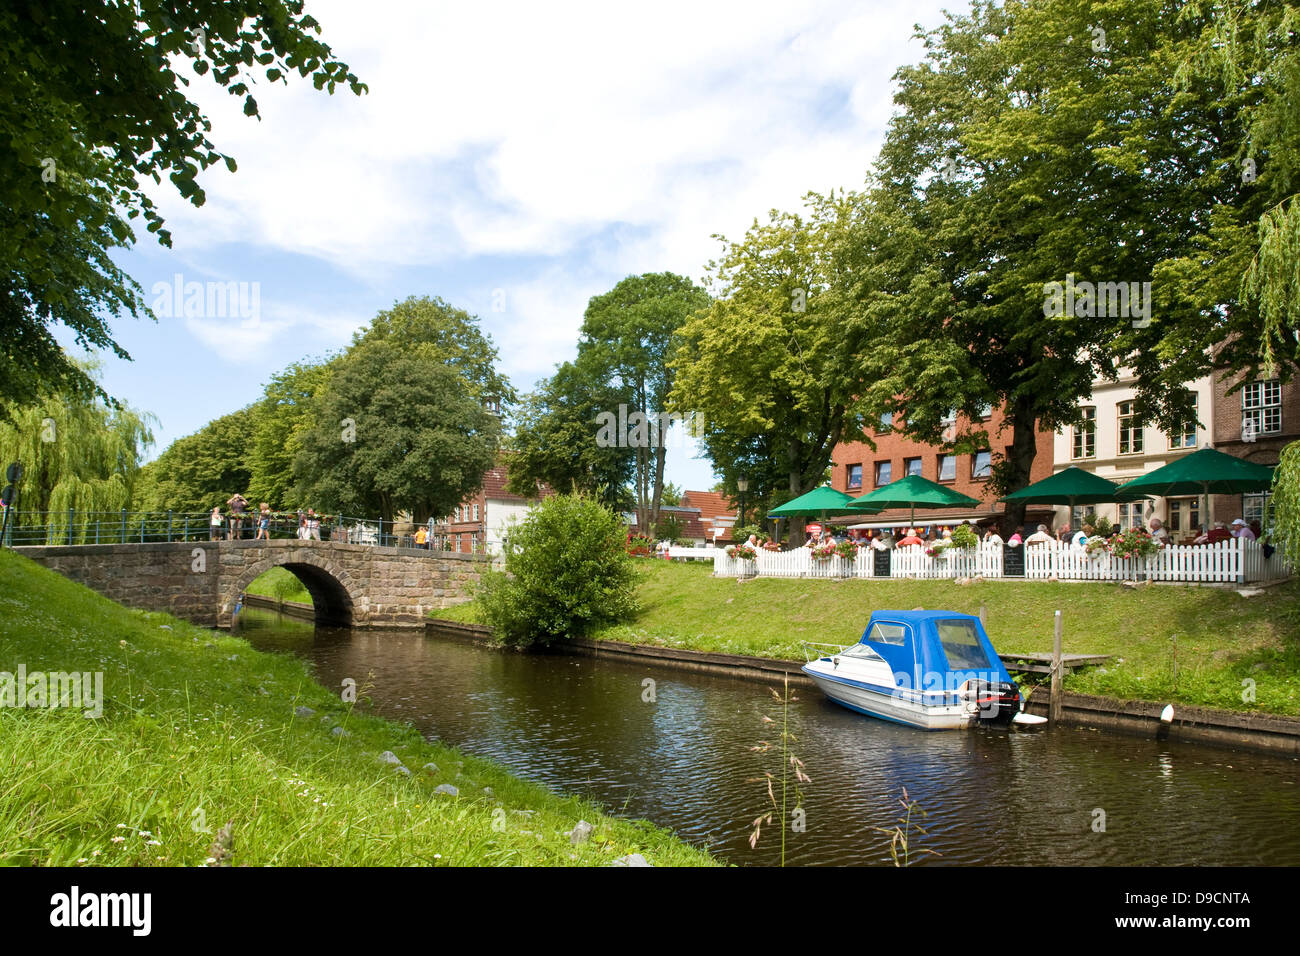 Situazione idilliaca in un canale di Friedrich's Town, posizione idilliaca su un canale a Friedrichstadt Foto Stock